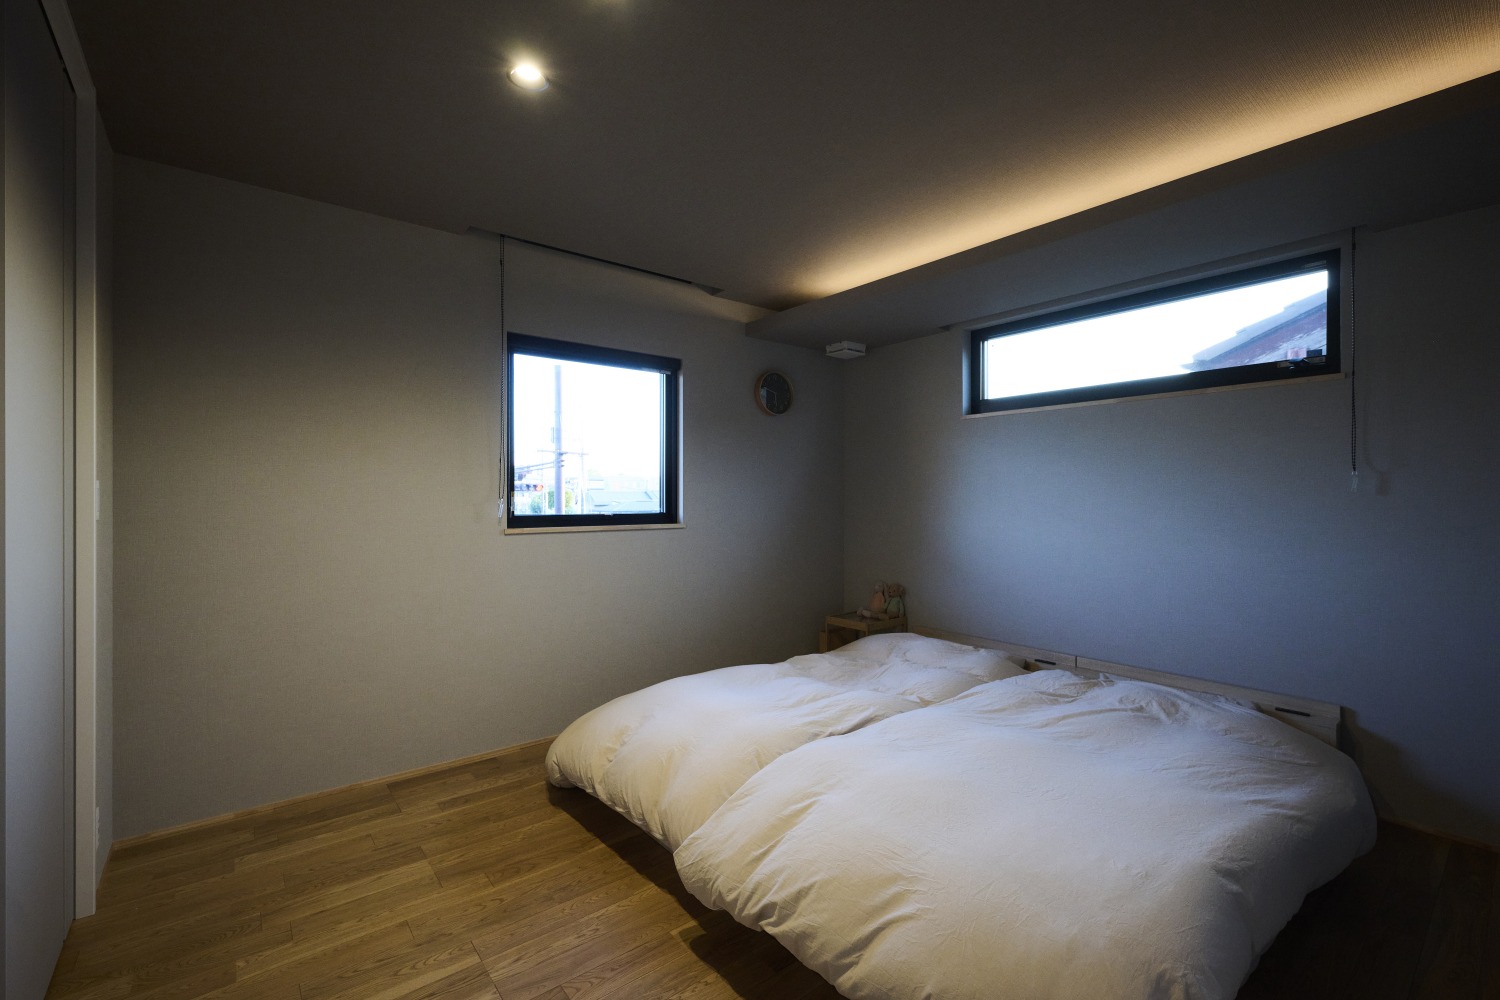 間接照明がリラックス感を生み出す寝室の画像